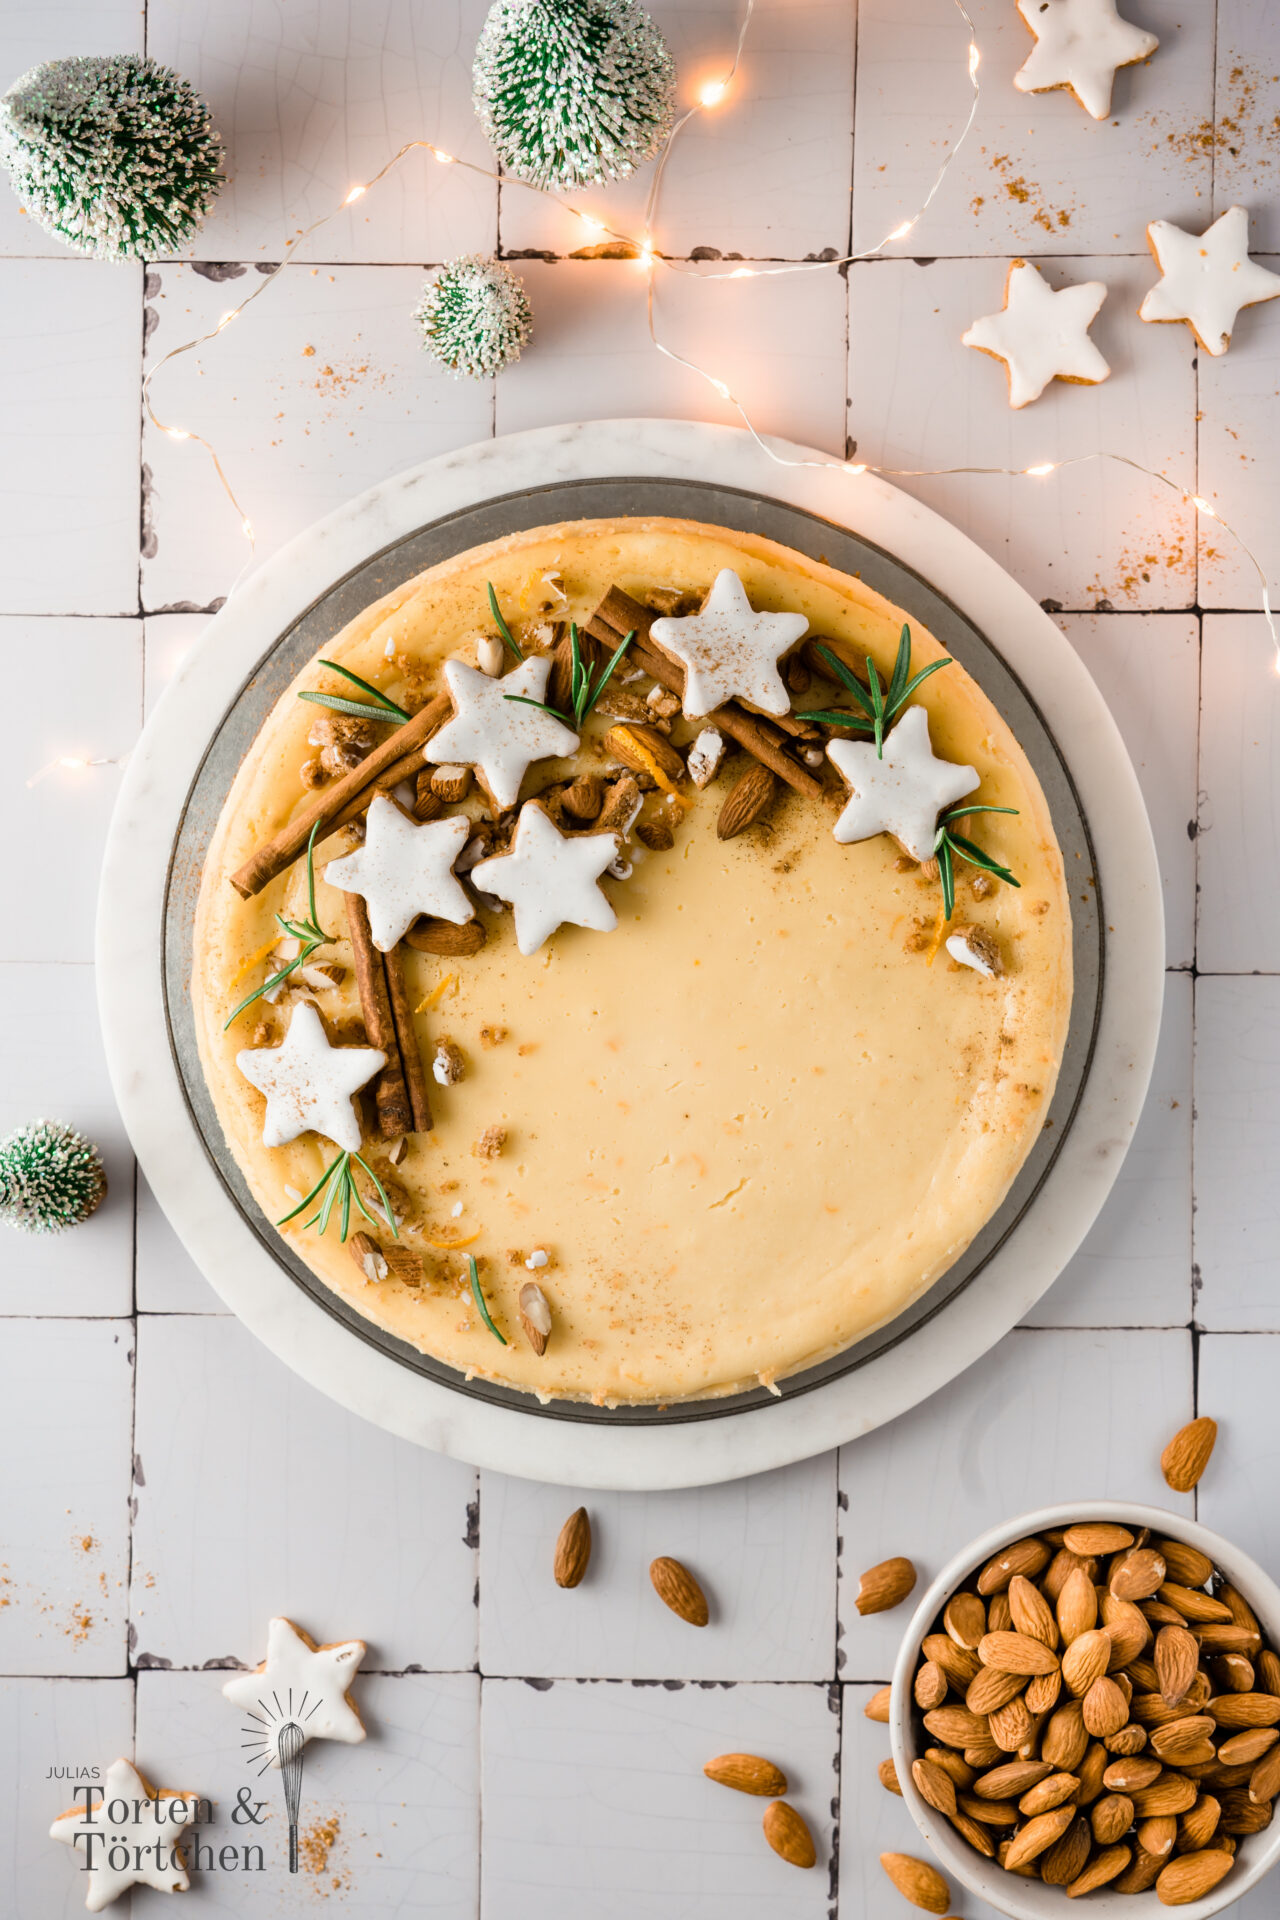 Einfaches Rezept für einen super Cremigen New York Cheesecake in winterlicher Version als Zimtstern Käsekuchen mit Zimtstern Boden und einer Käsekuchenfüllung mit Vanille, etwas Orange und Mascarpone. Weniger säuerlich und super cremig! #Käsekuchen #Zimtsterne #Cheesecake #Weihnachtsbäckerei #backen #Rezept